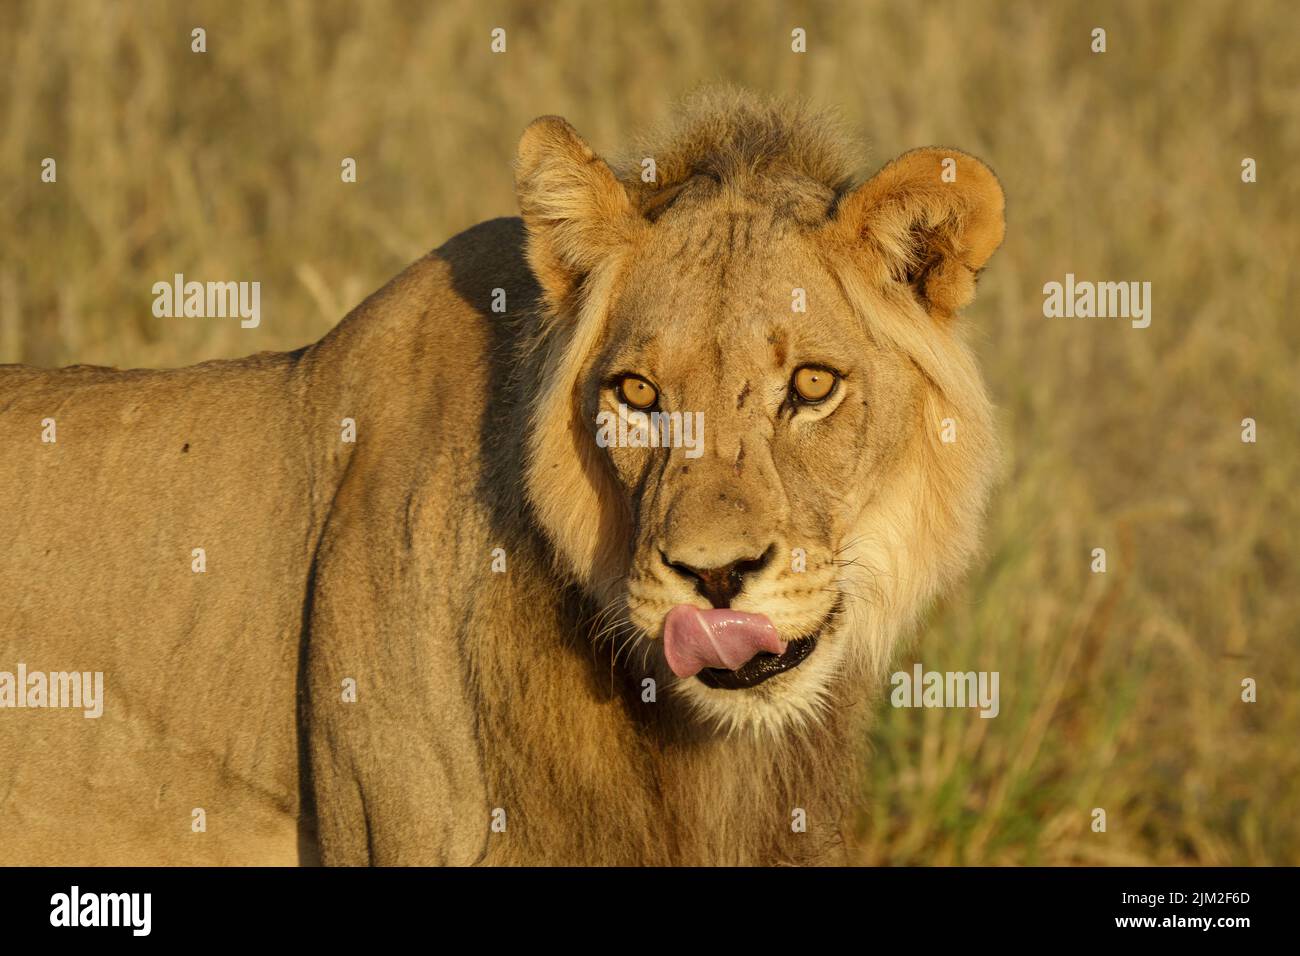 Black-maned Kalahari lion (Panthera leo) portrait. Kgalagadi Transfrontier Park, Kalahari, South Africa Stock Photo